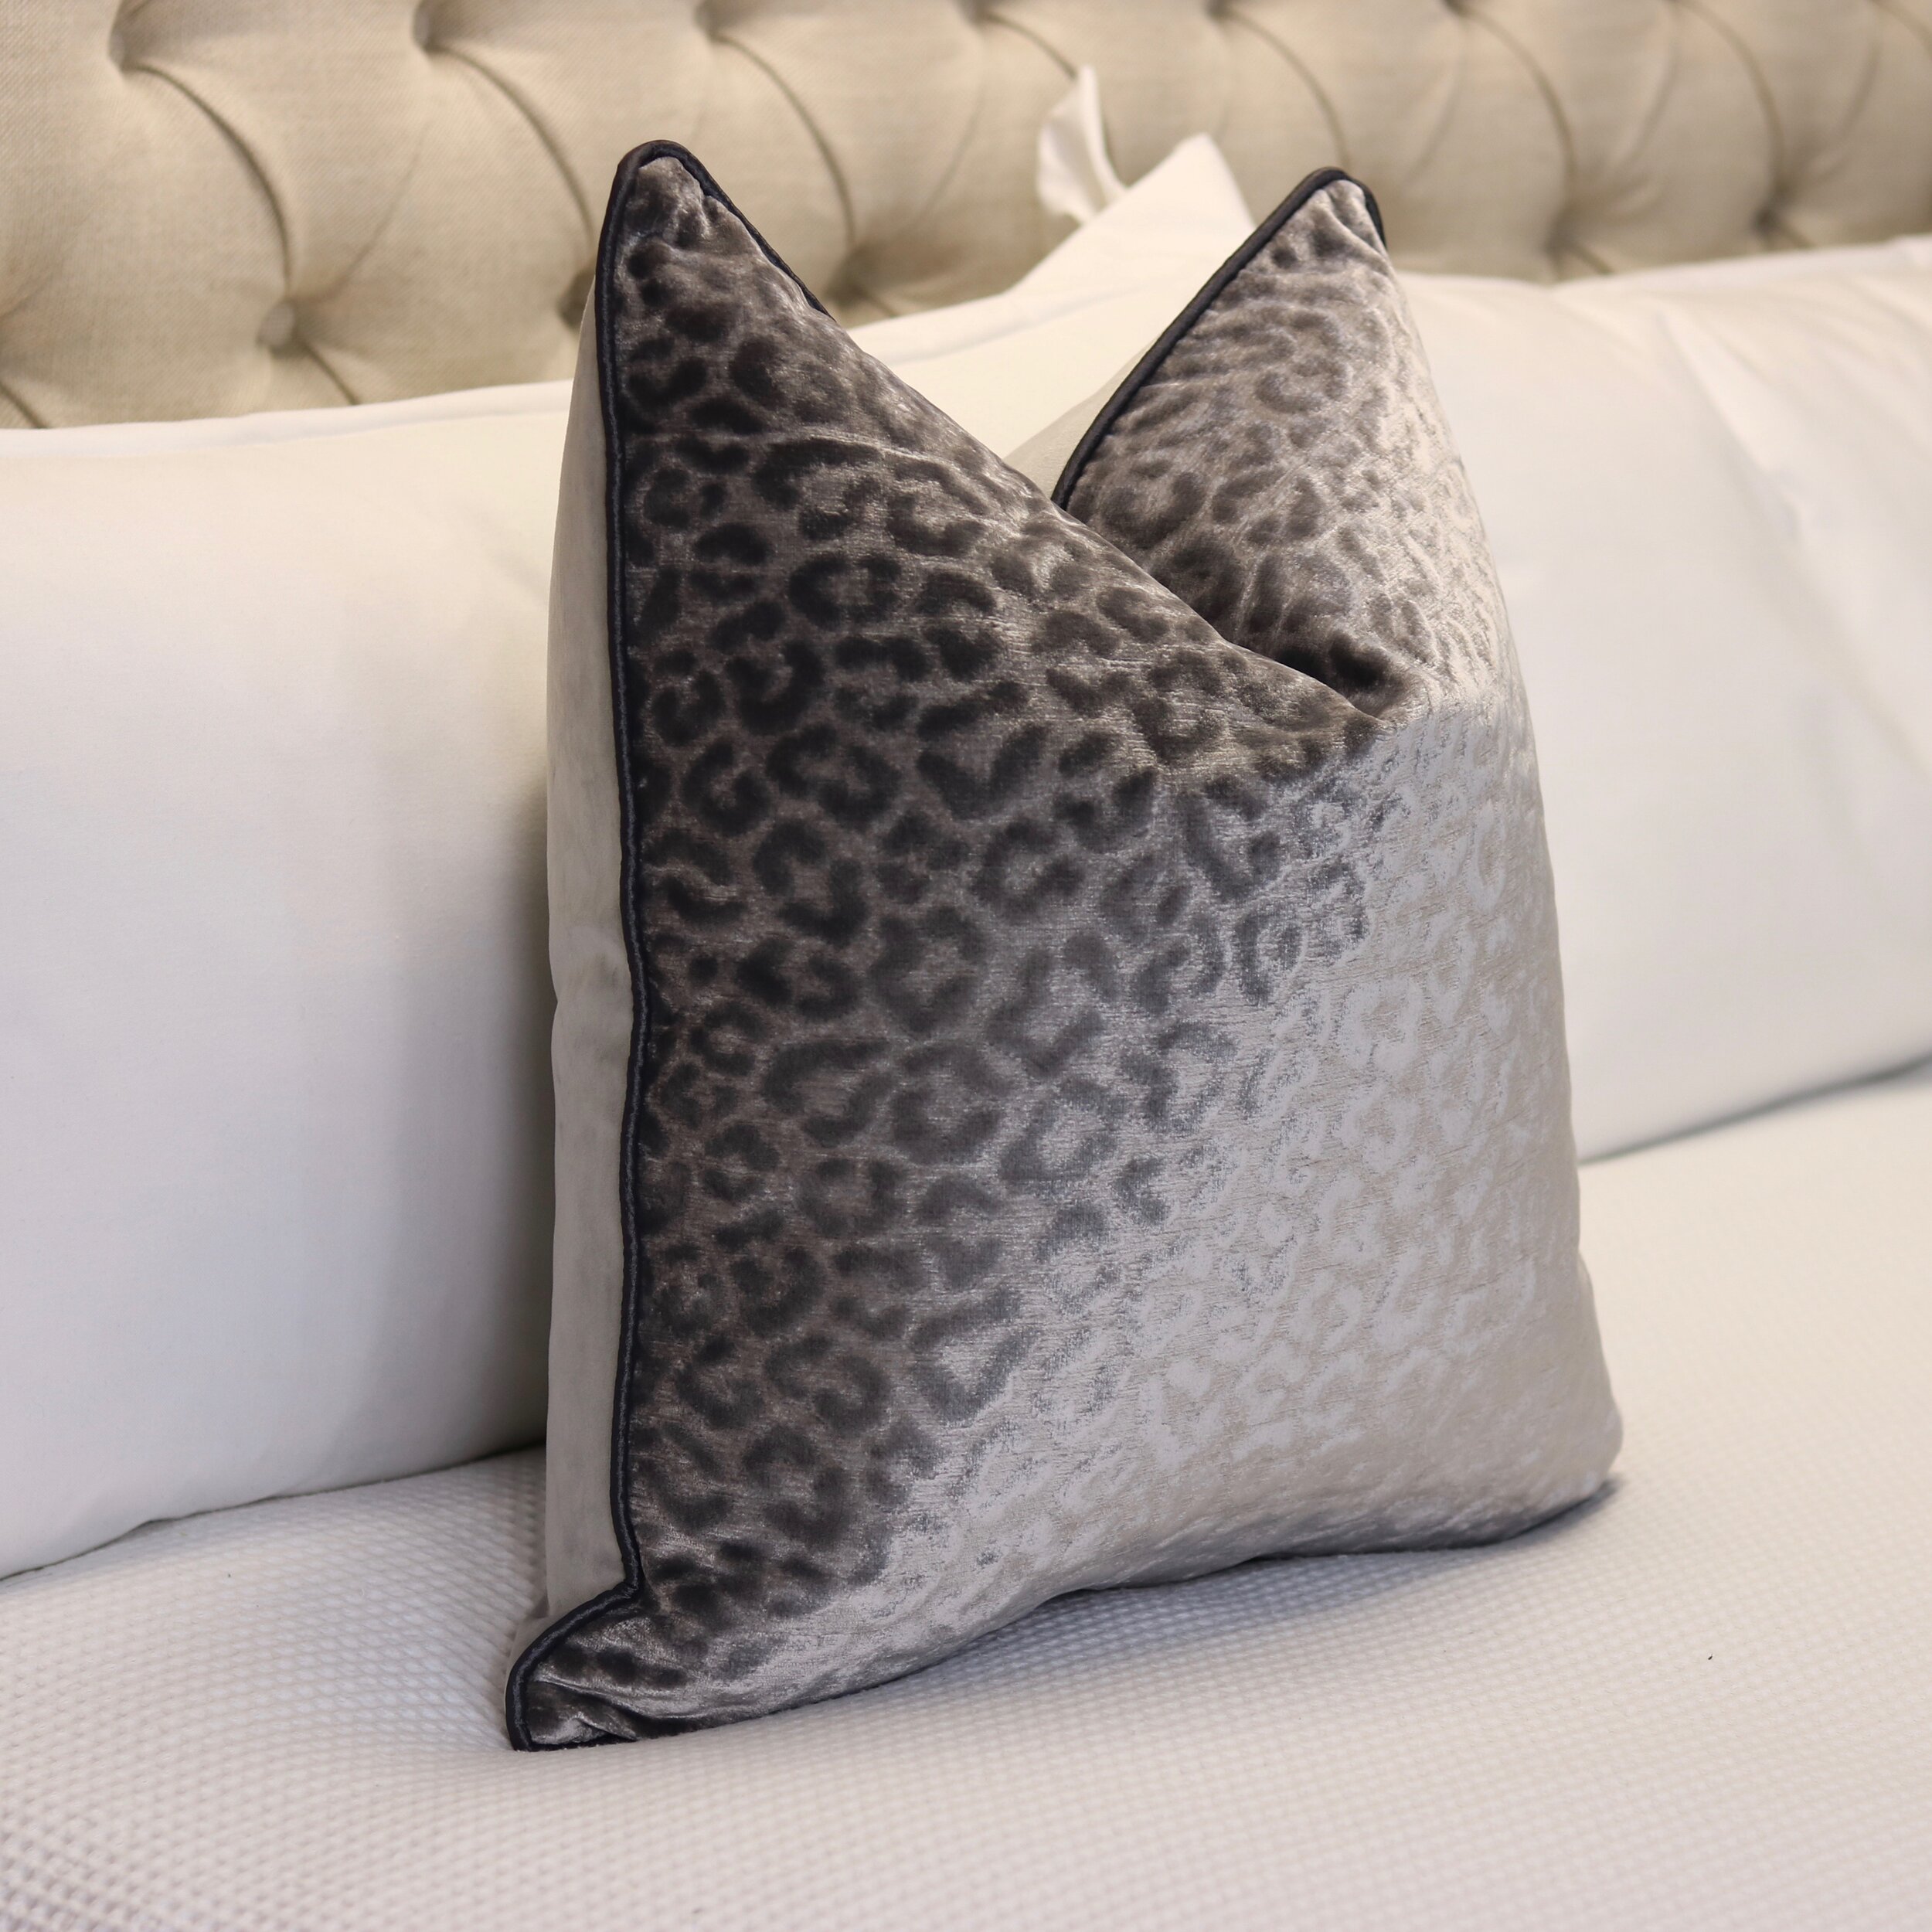 leopard print velvet cushion